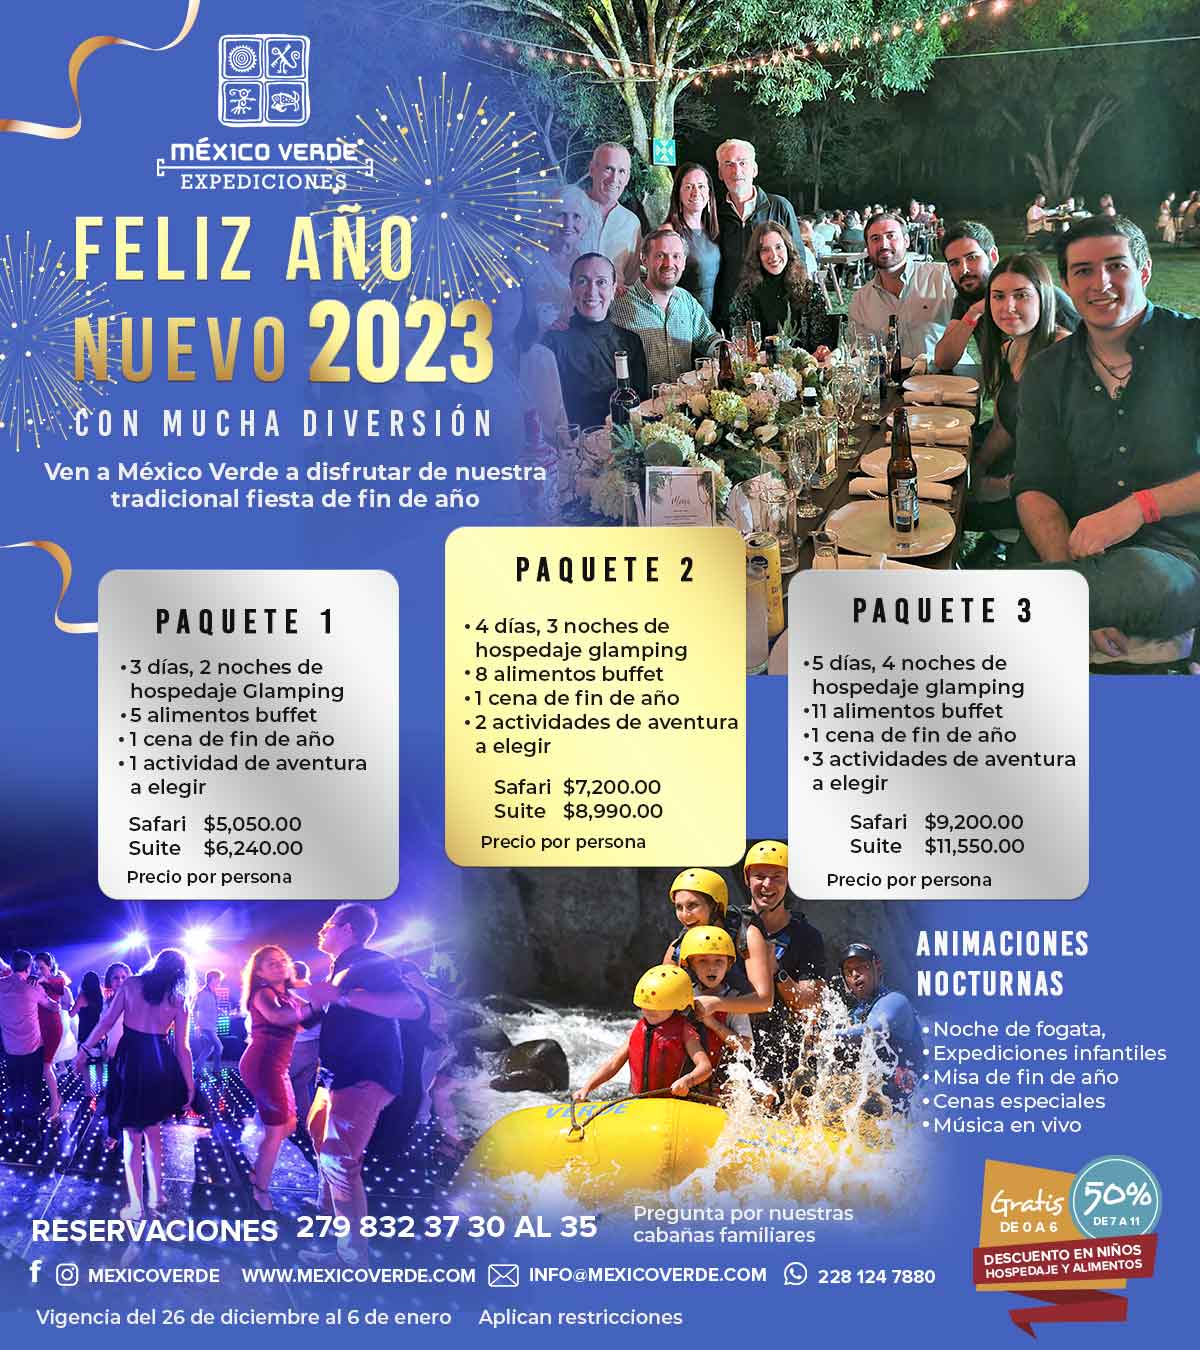 ¡Feliz año nuevo 2023! - Expediciones México Verde